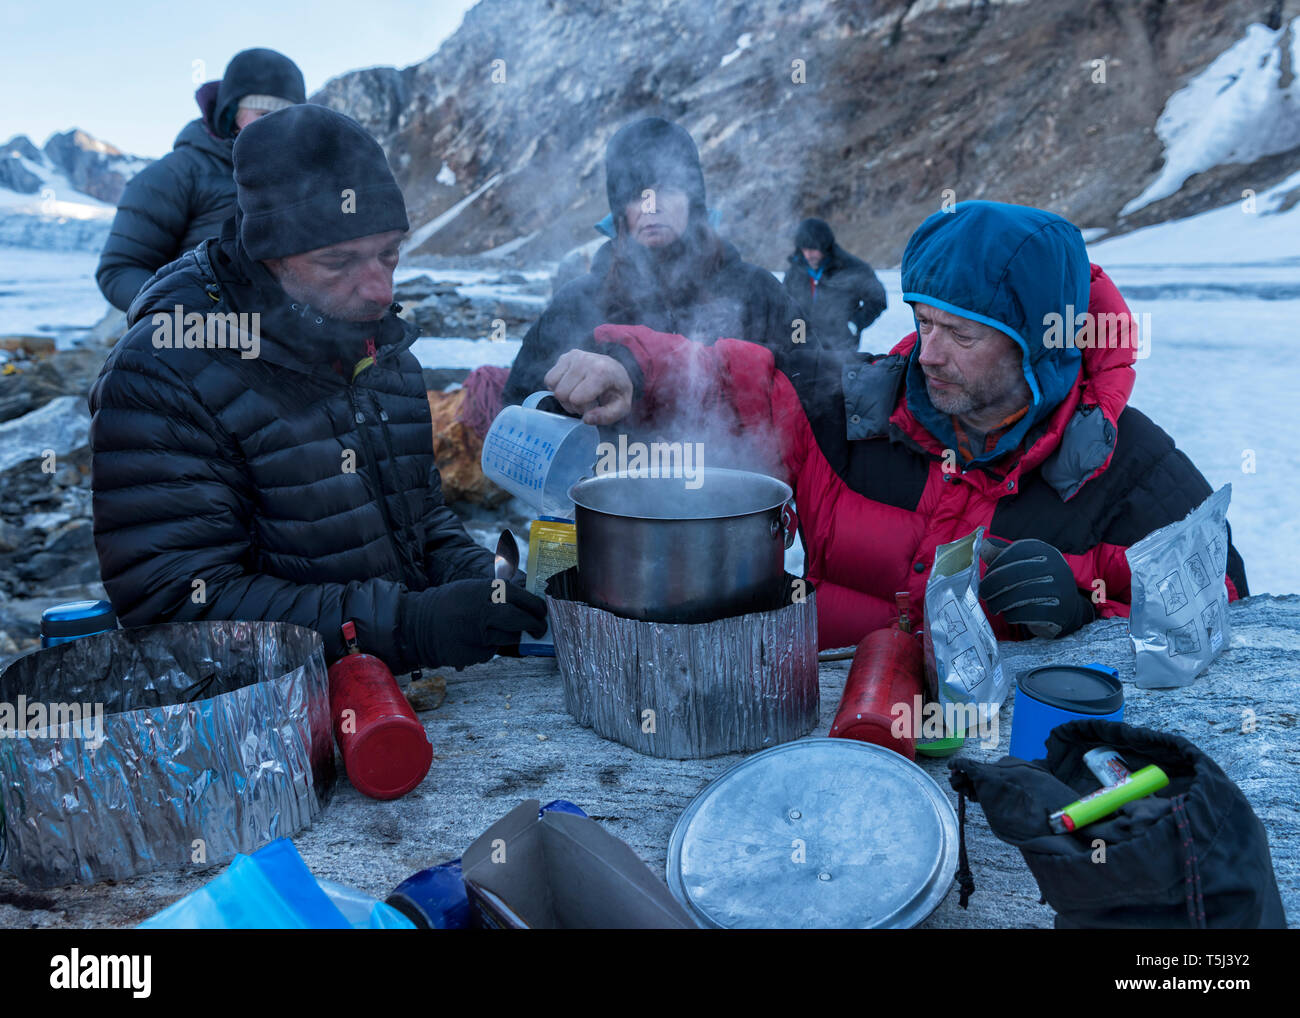 Le Groenland, Sermersooq, Kulusuk, Schweizerland Alpes, groupe de personnes ayant une coupure d'eau de cuisson Banque D'Images